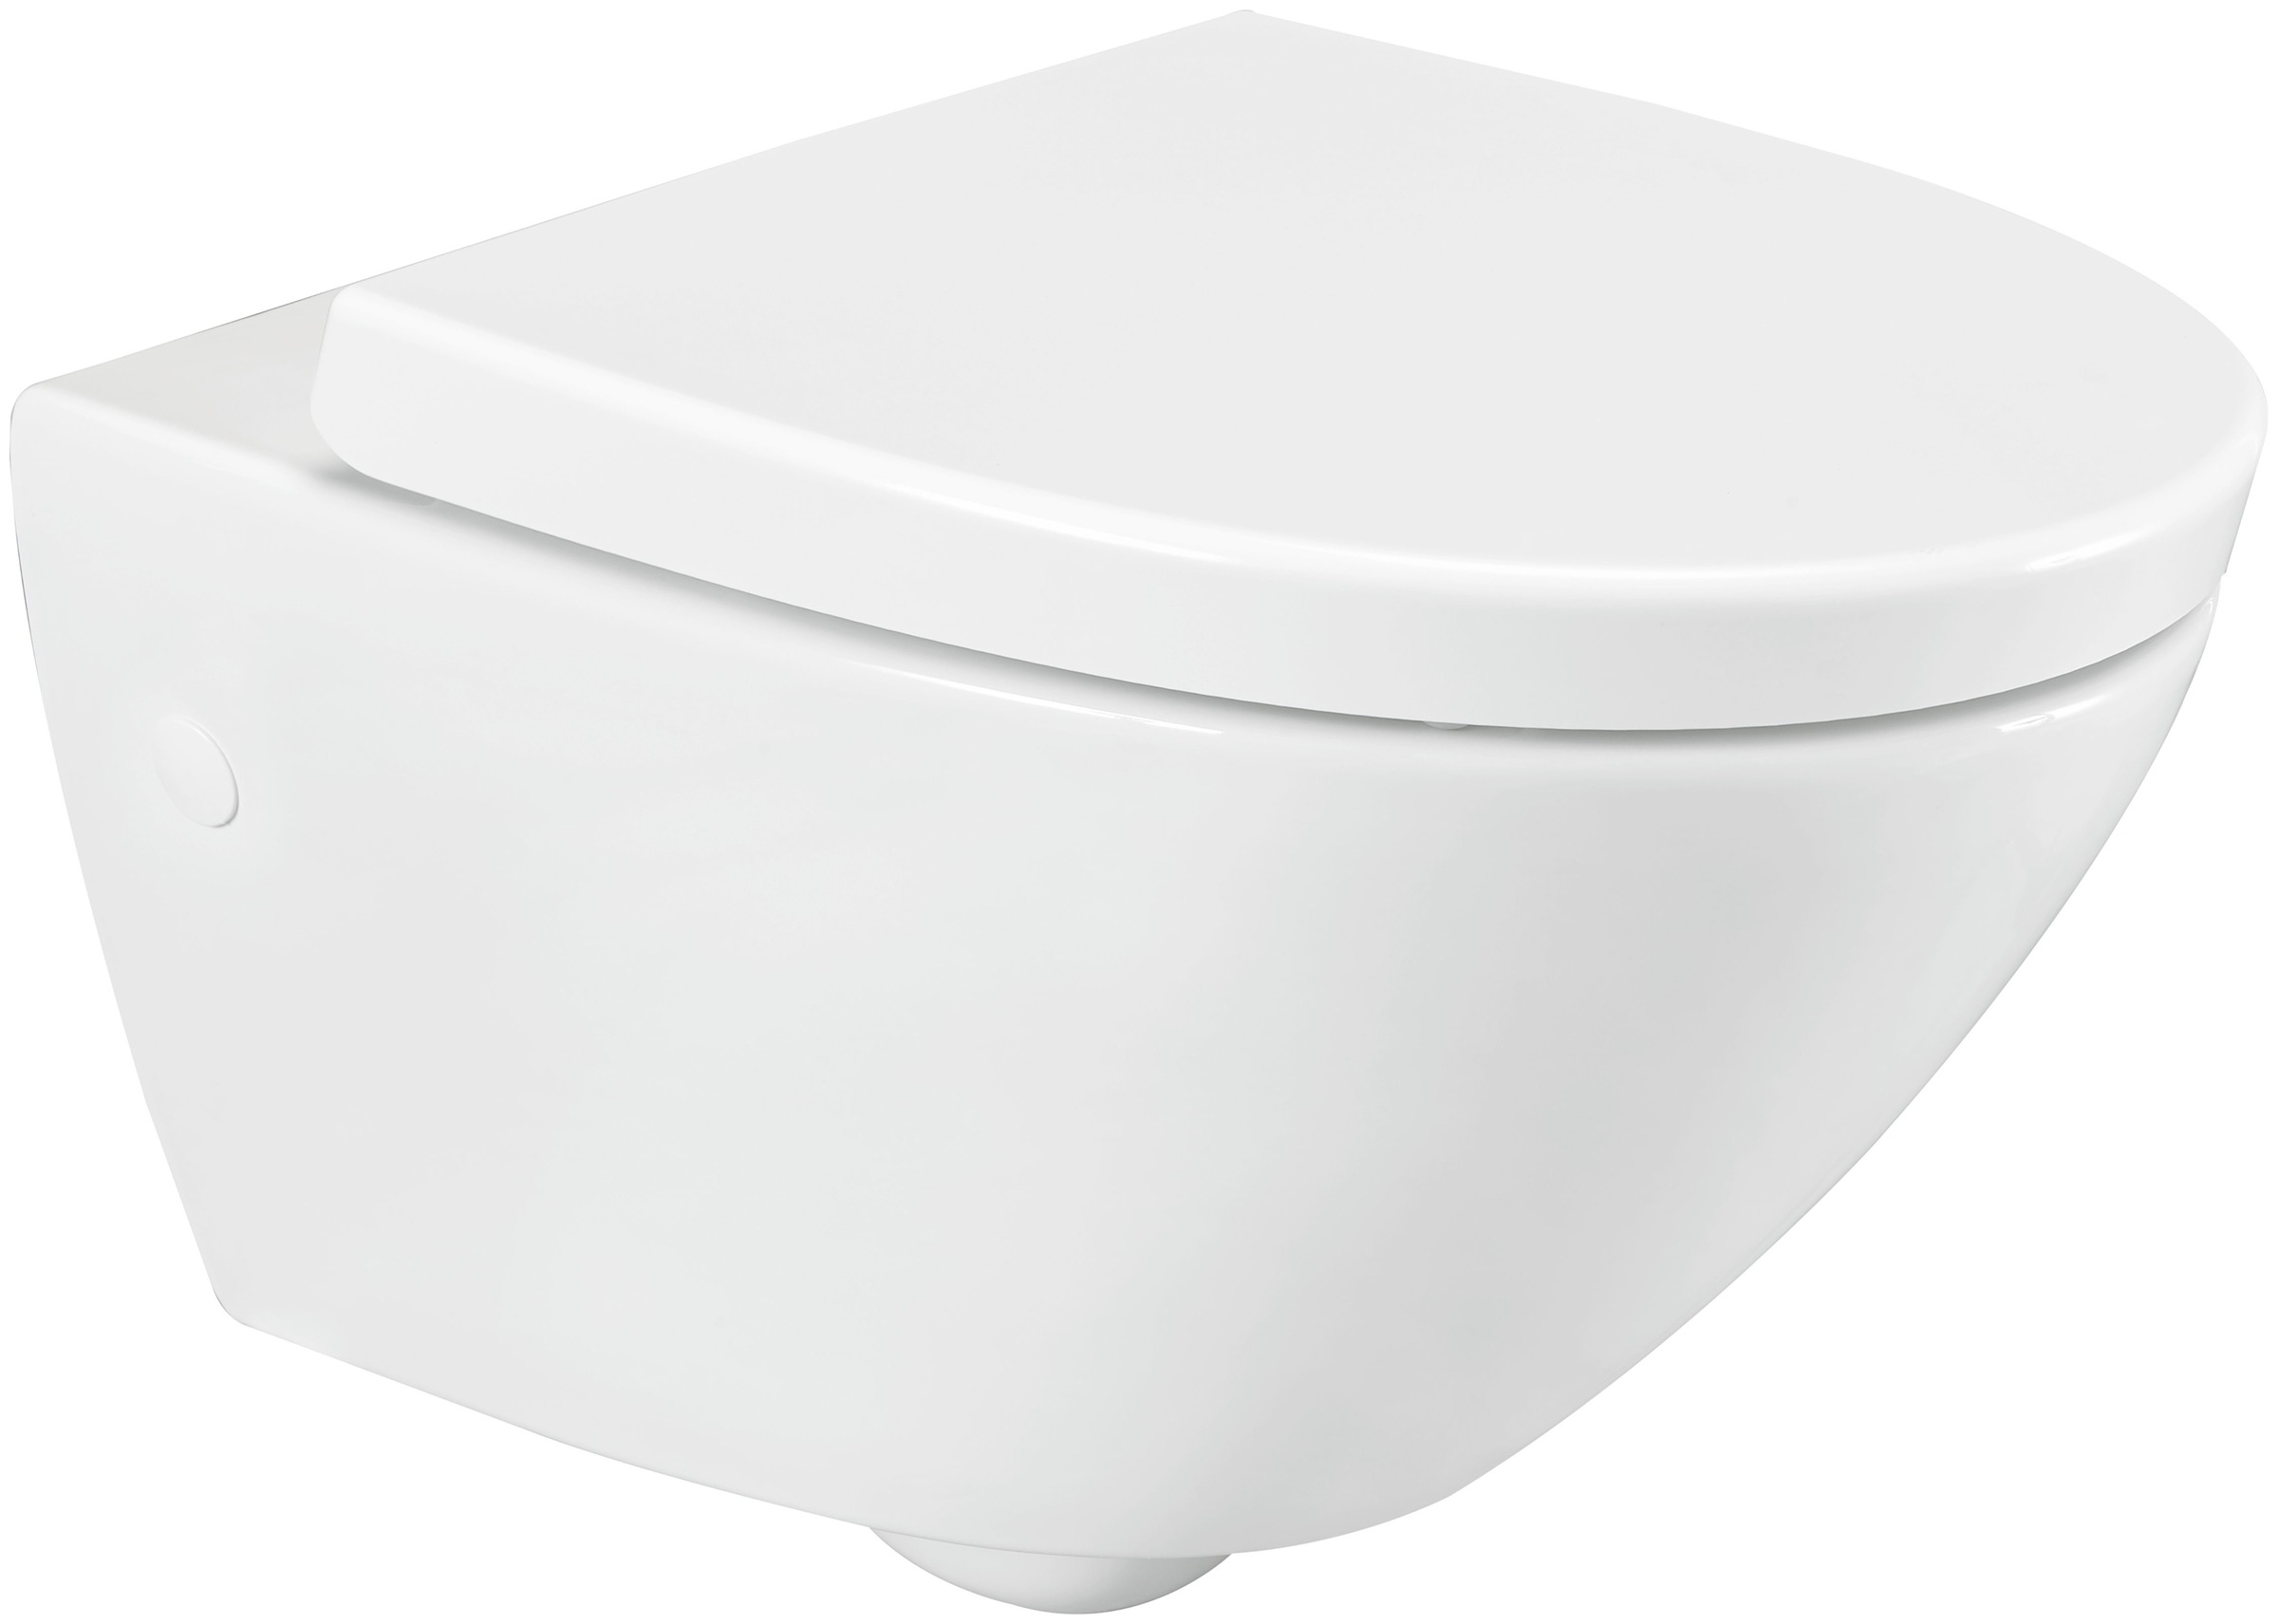 welltime Tiefspül-WC »Spring«, spülrandlose Toilette aus Sanitärkeramik, inkl. WC-Sitz mit Softclose